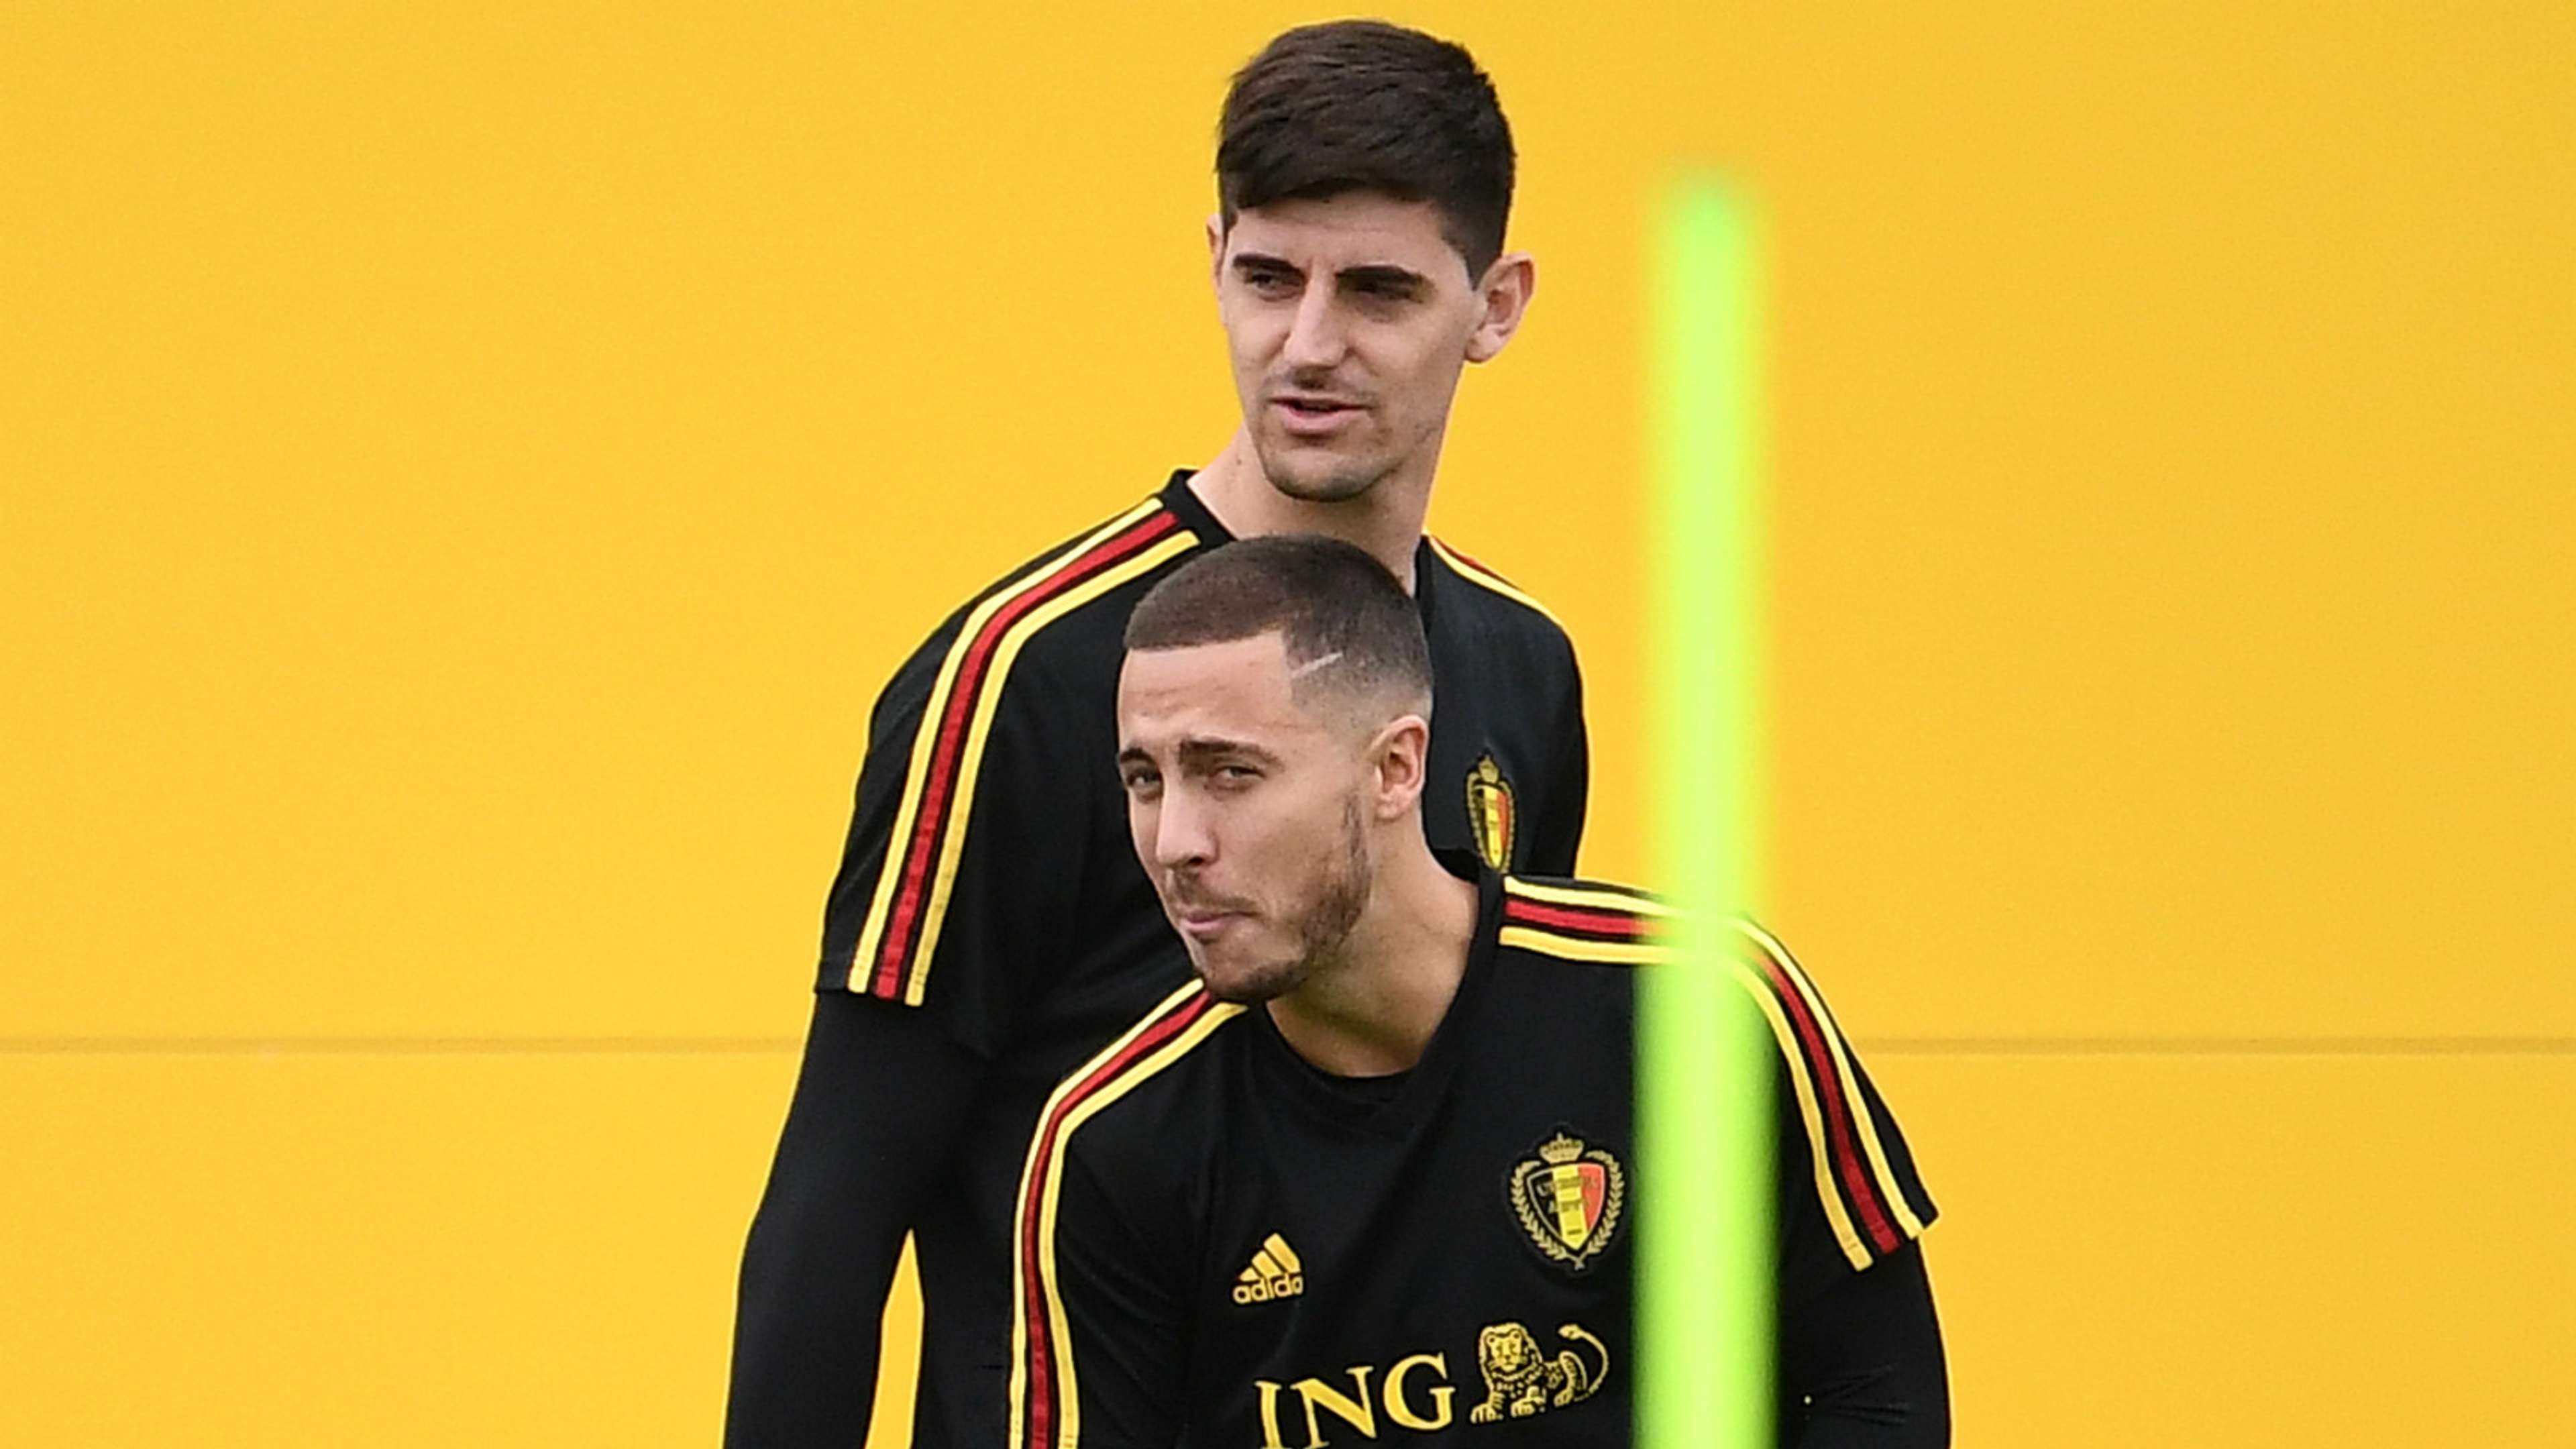 Eden Hazard Thibaut Courtois Belgium World Cup 2018